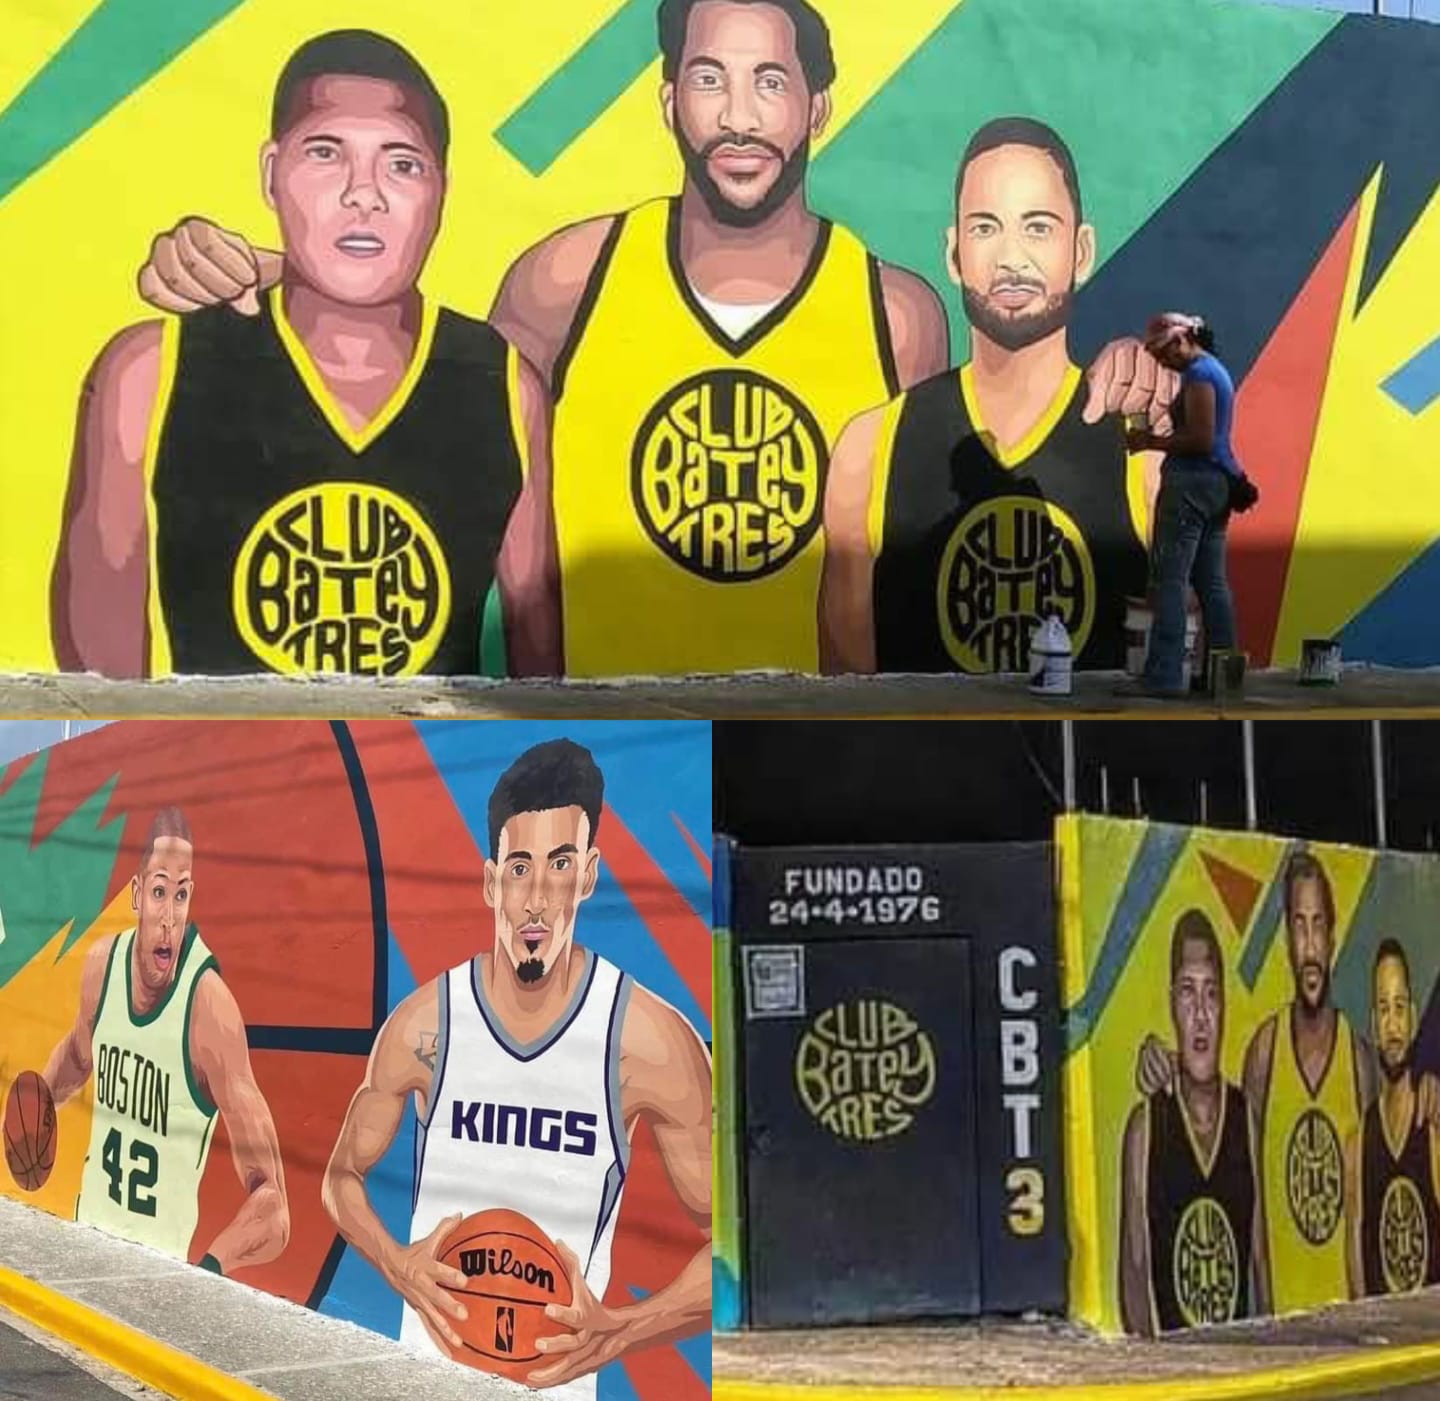 Rinden homenaje a 5 célebres atletas puertoplateños con murales en verja del Club Batey Tres